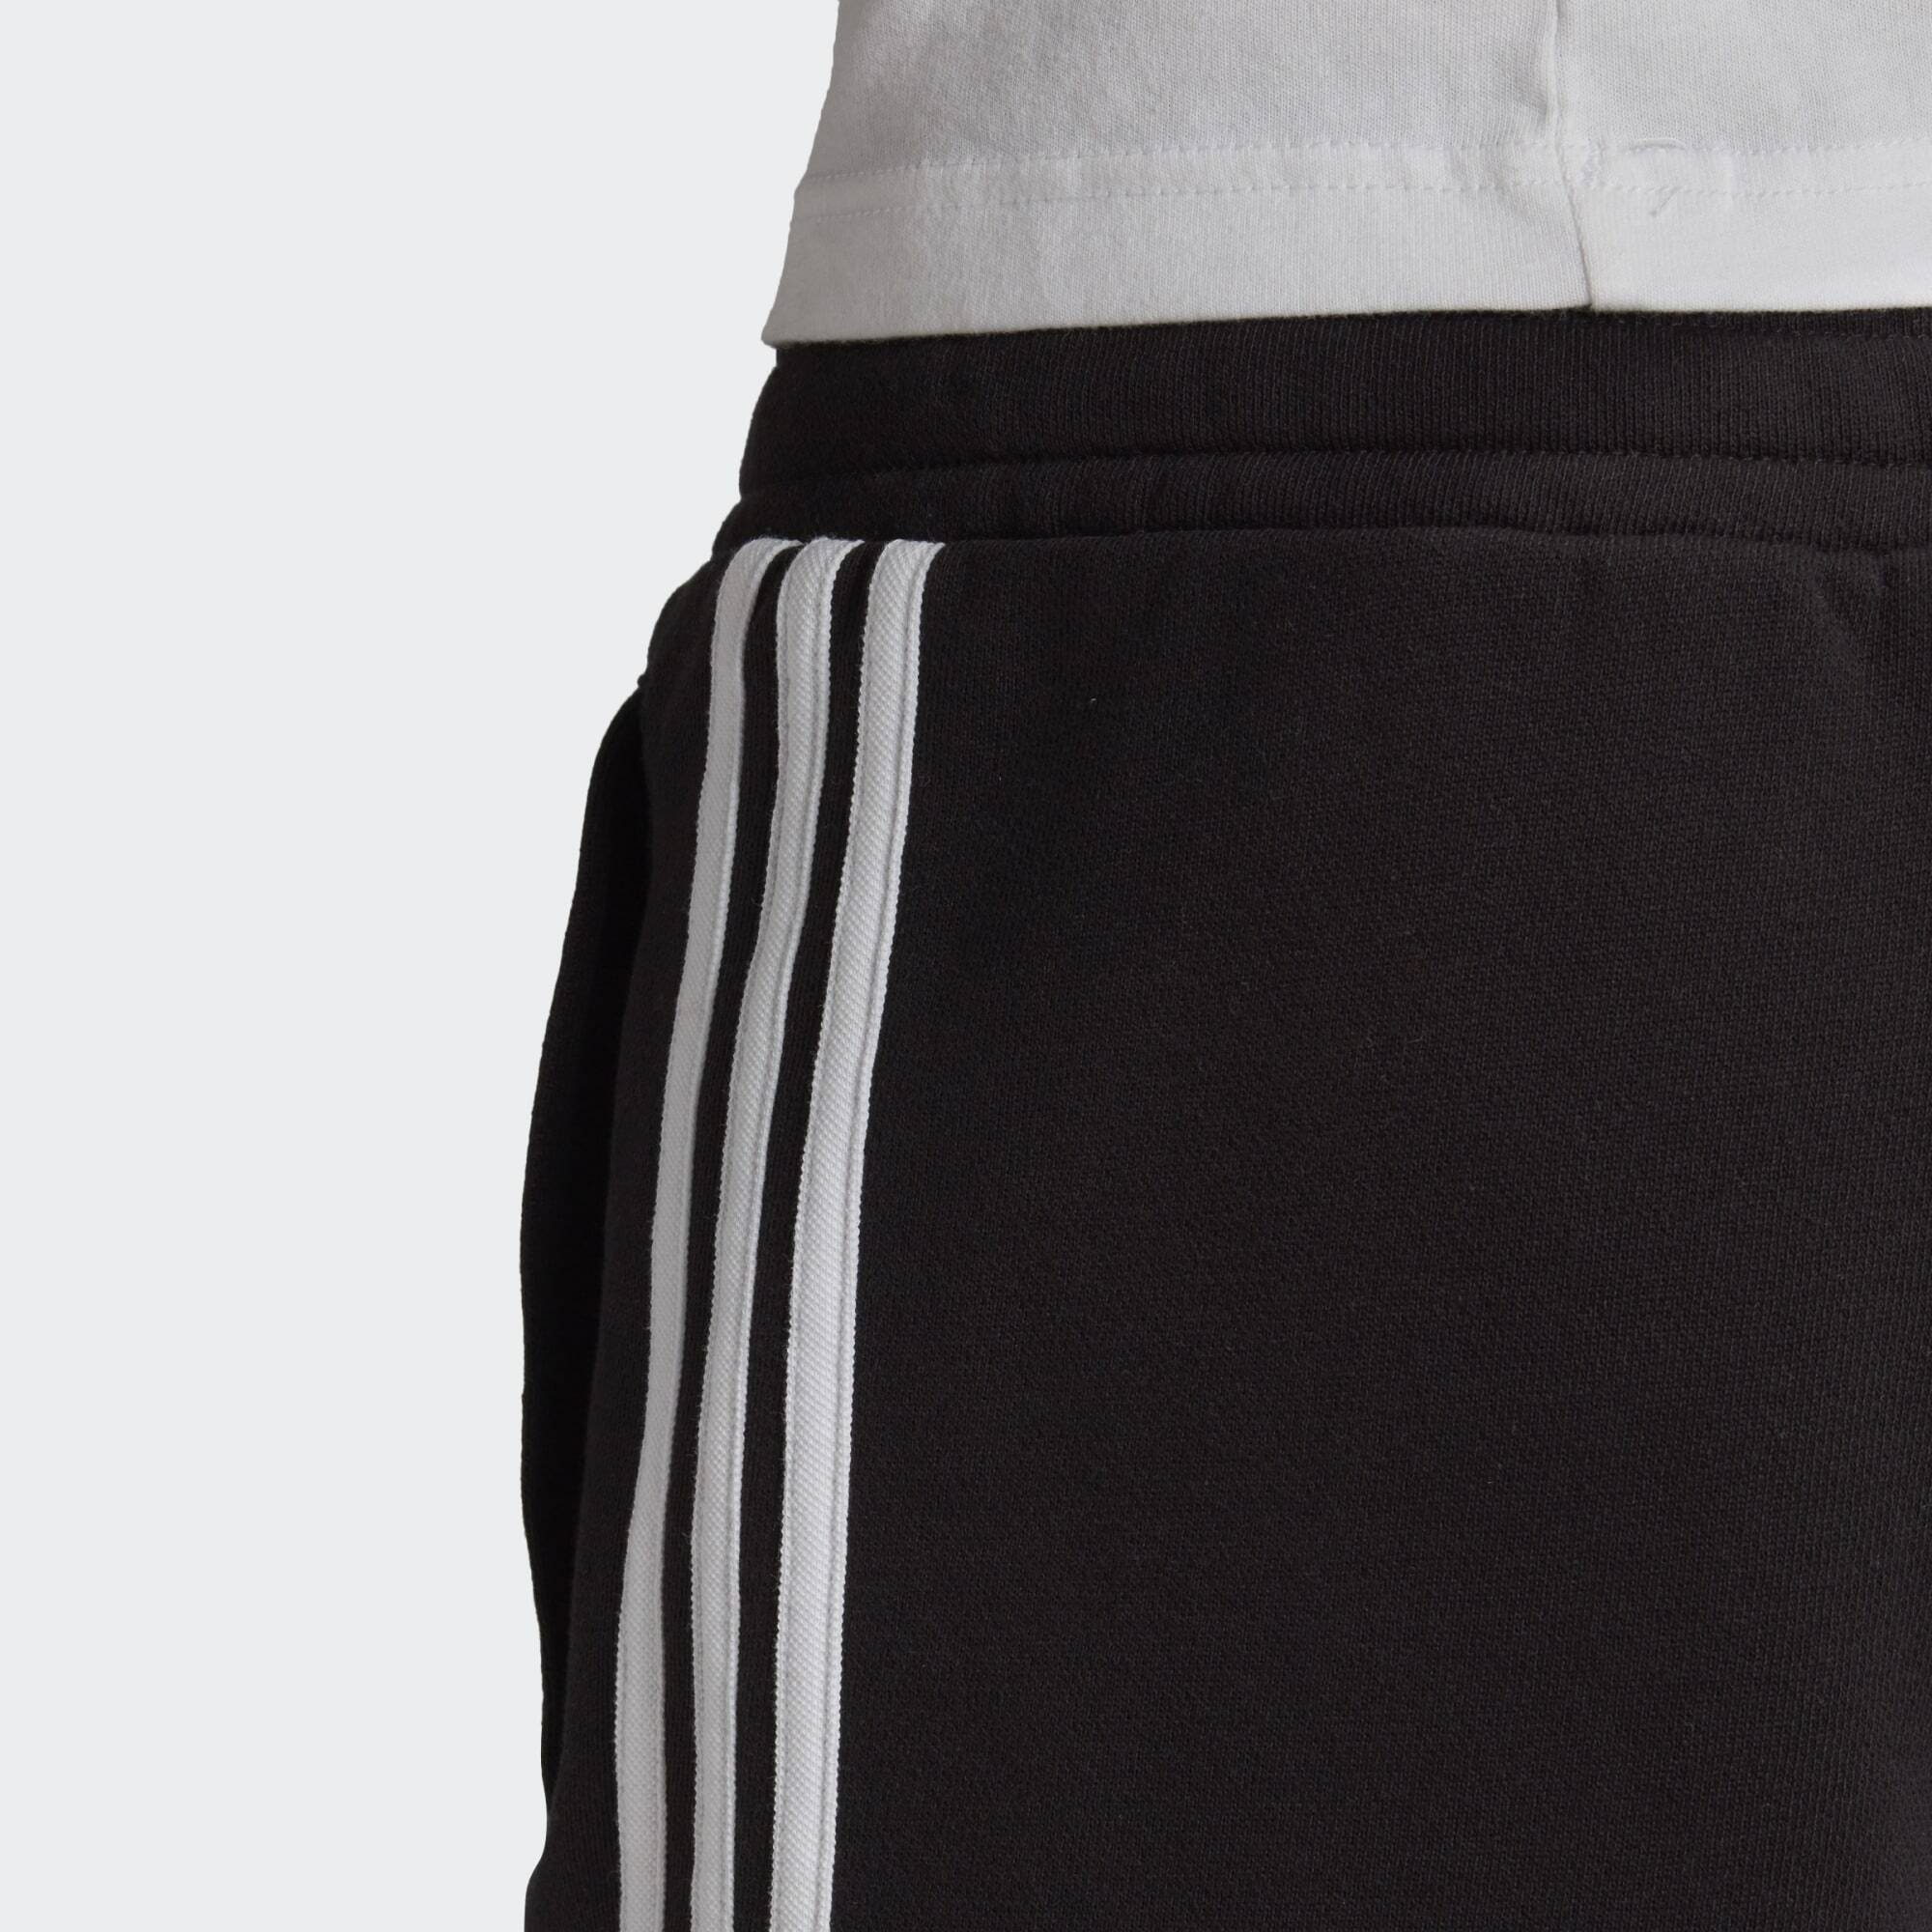 adidas Originals Shorts Black SHORTS SWEAT 3-STREIFEN